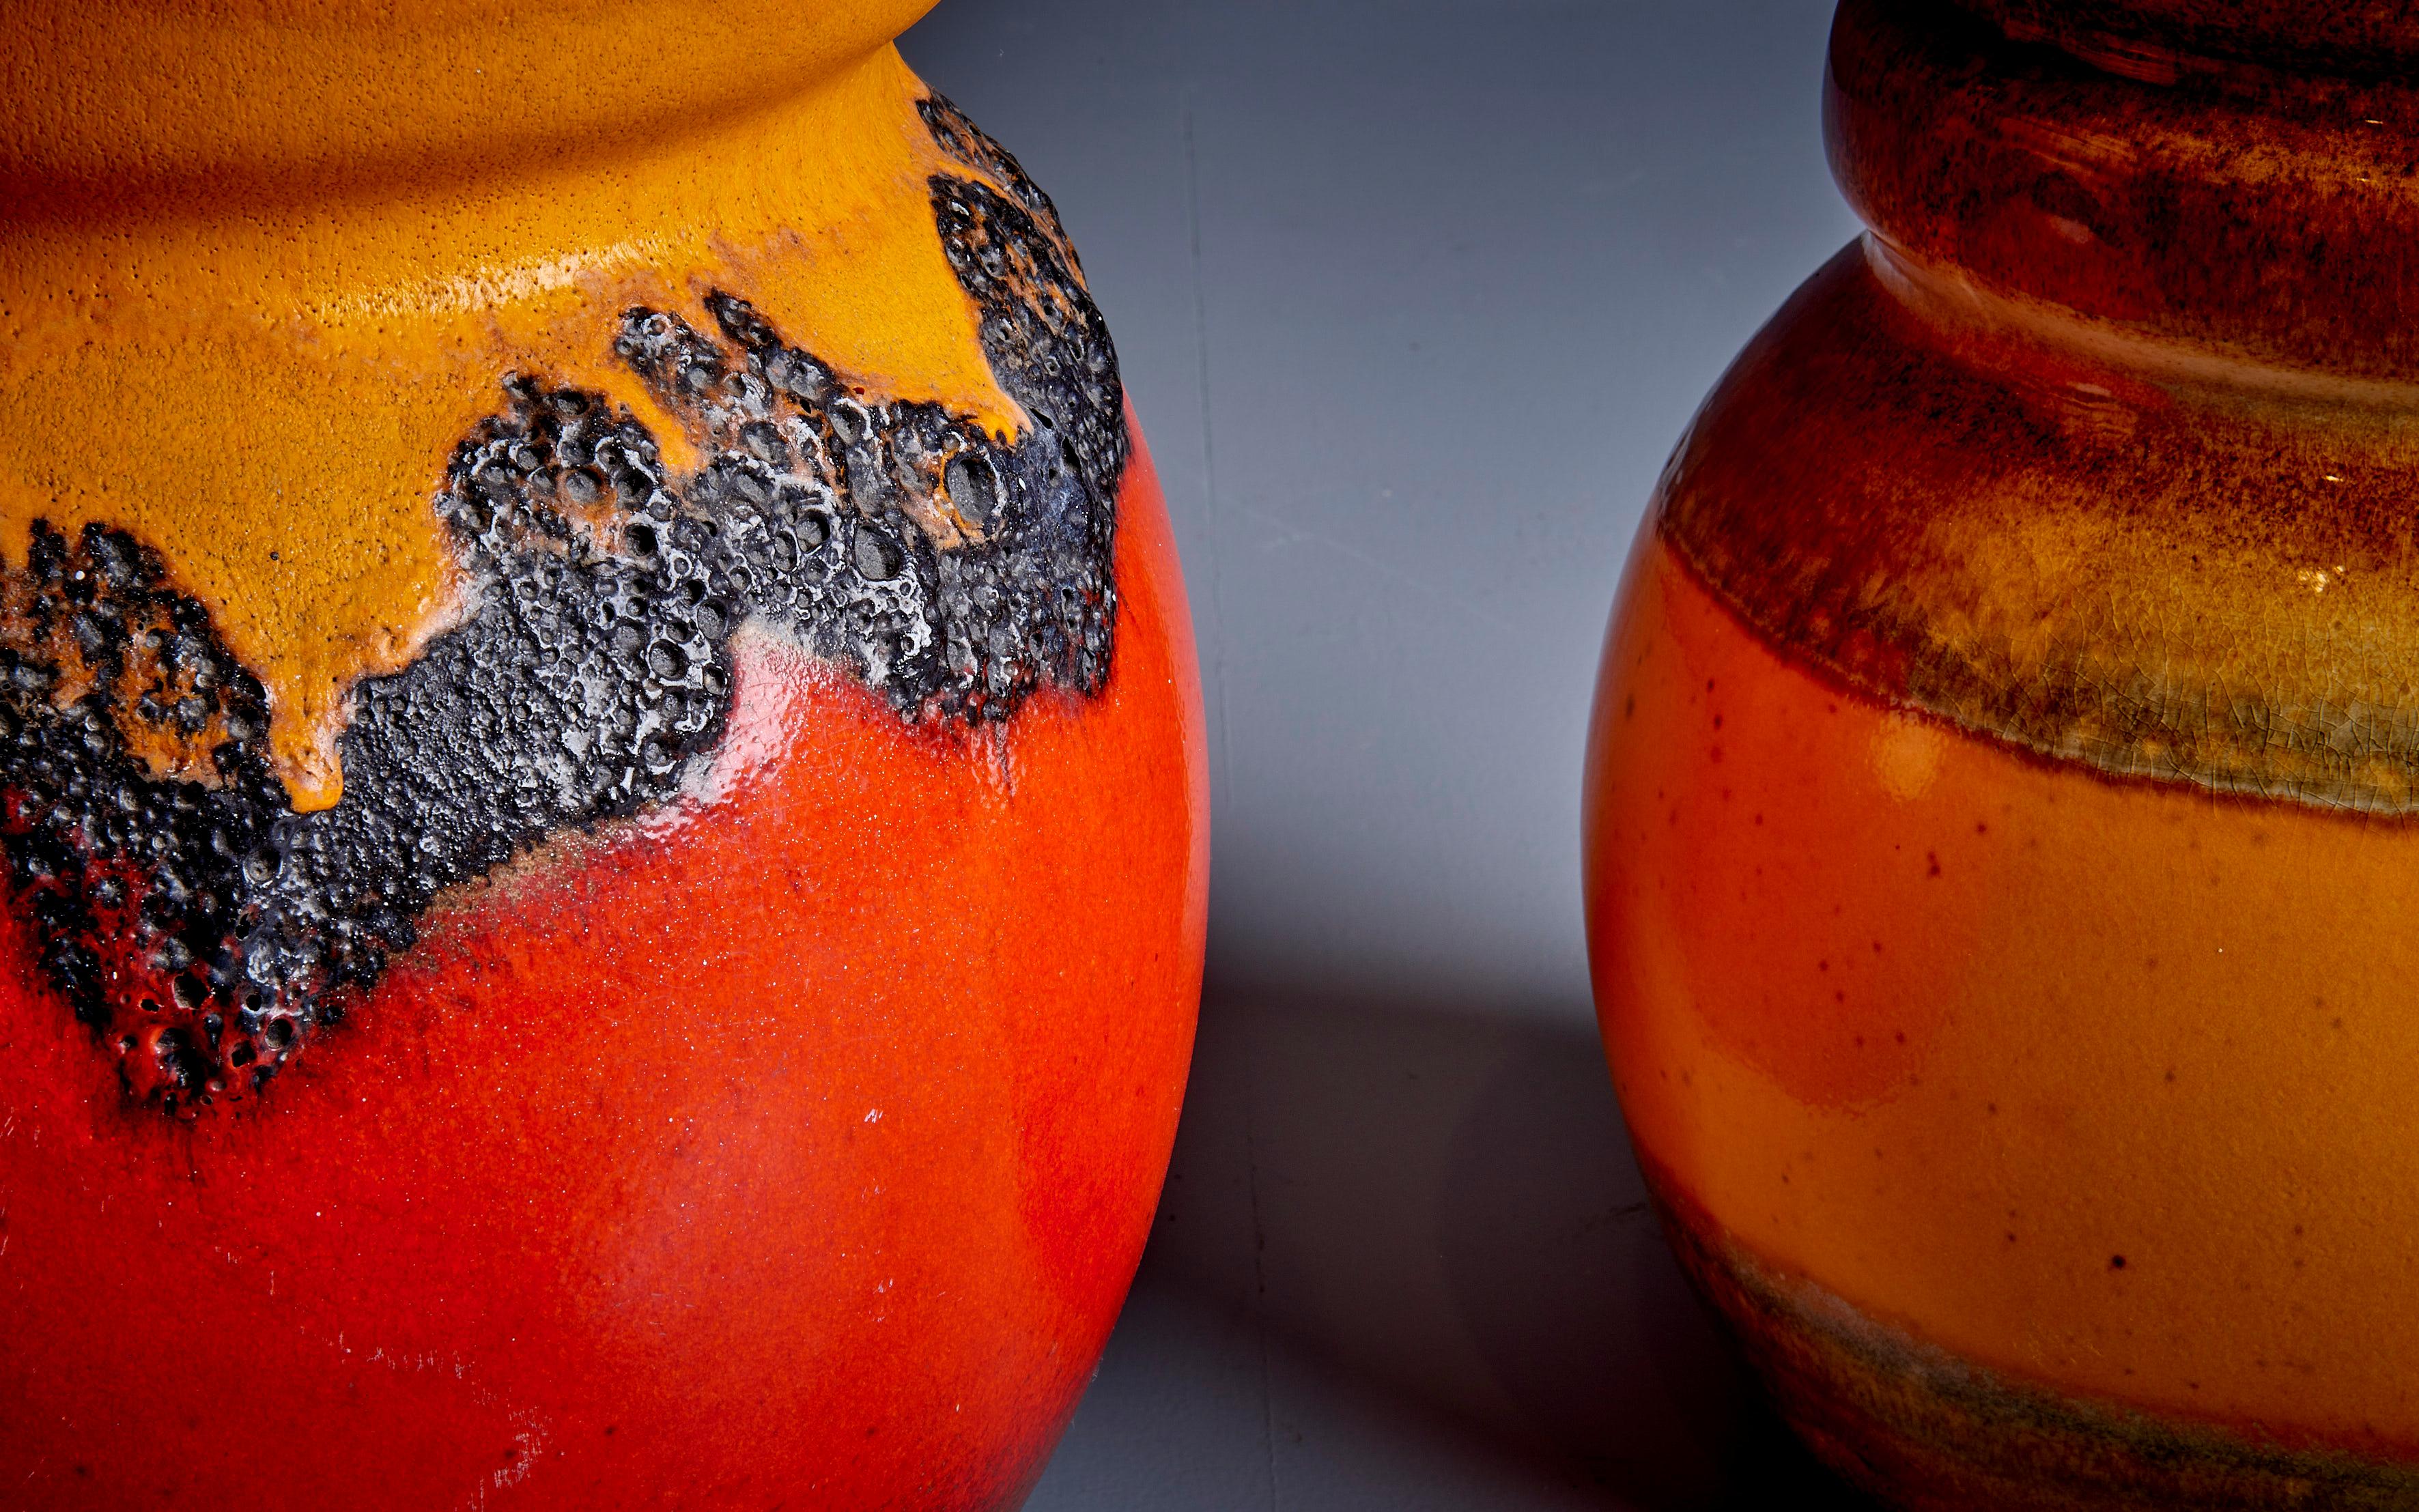 Satz von 2 großen Vasen aus fetter Lava-Keramik, hergestellt in den 1960er Jahren in West-Deutschland.

Die einzelnen Dimensionen sind:
A: Dm. 23 cm x H 41 cm
B: Dm. 28 cm x H 53 cm.